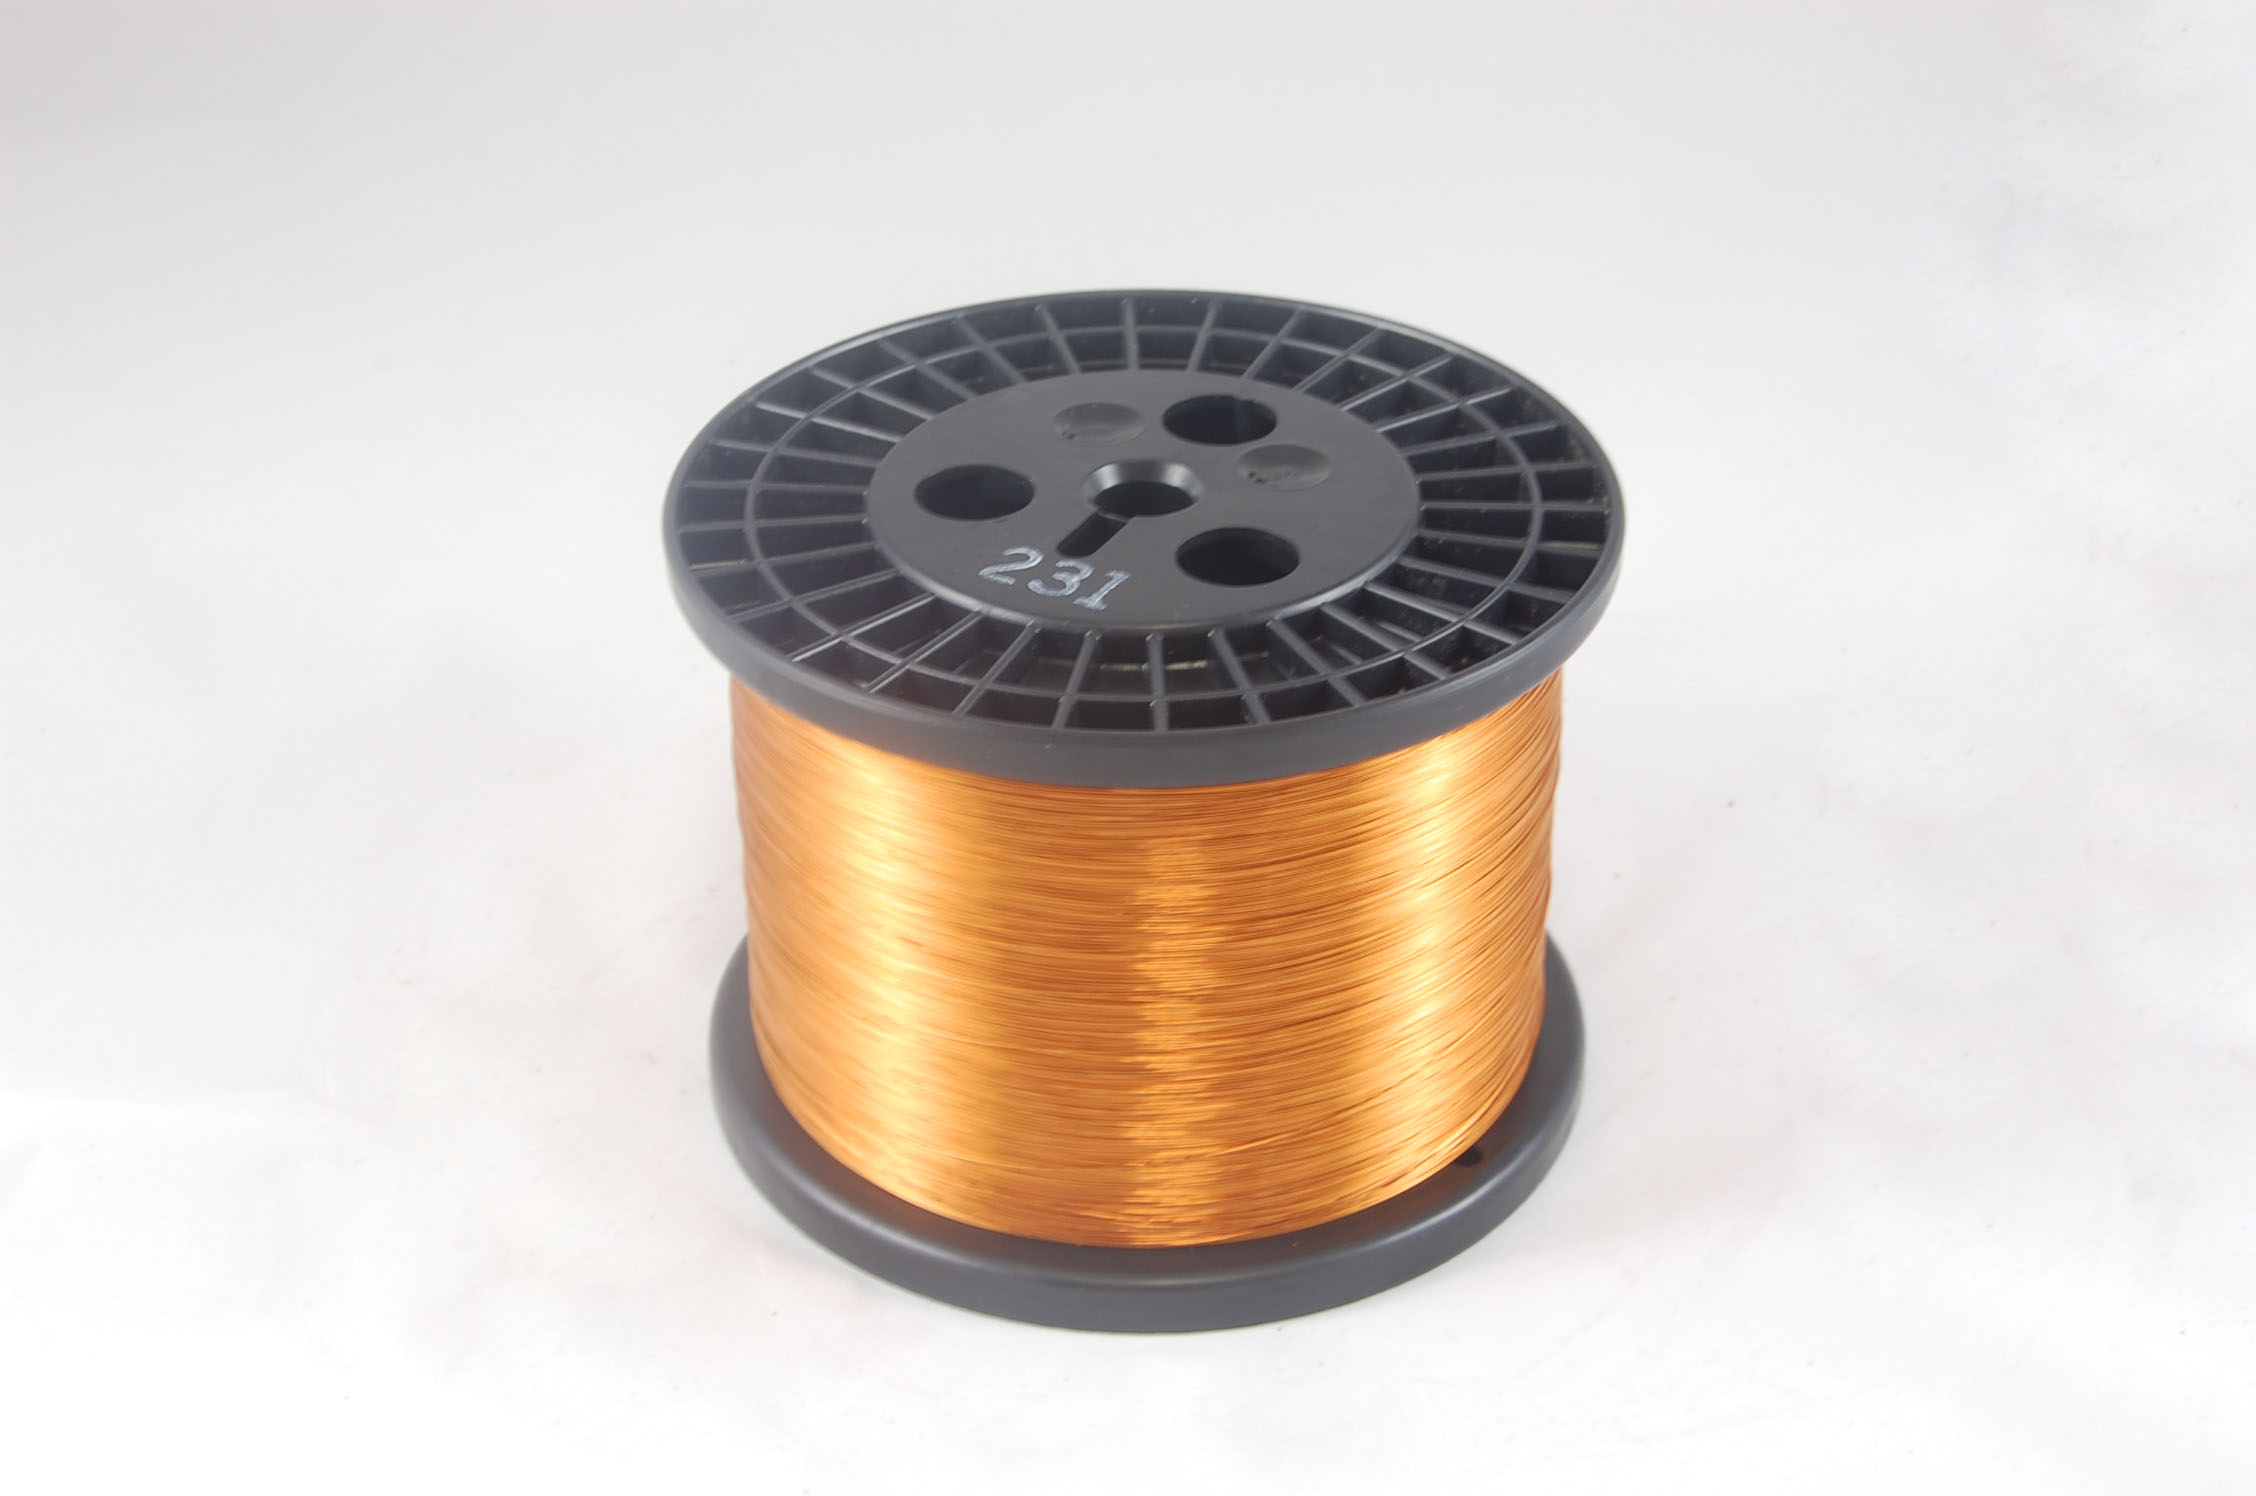 #25 Heavy GP/MR-200 Round MW 35 Copper Magnet Wire 200°C, copper, 10 LB 6" spool (average wght.)